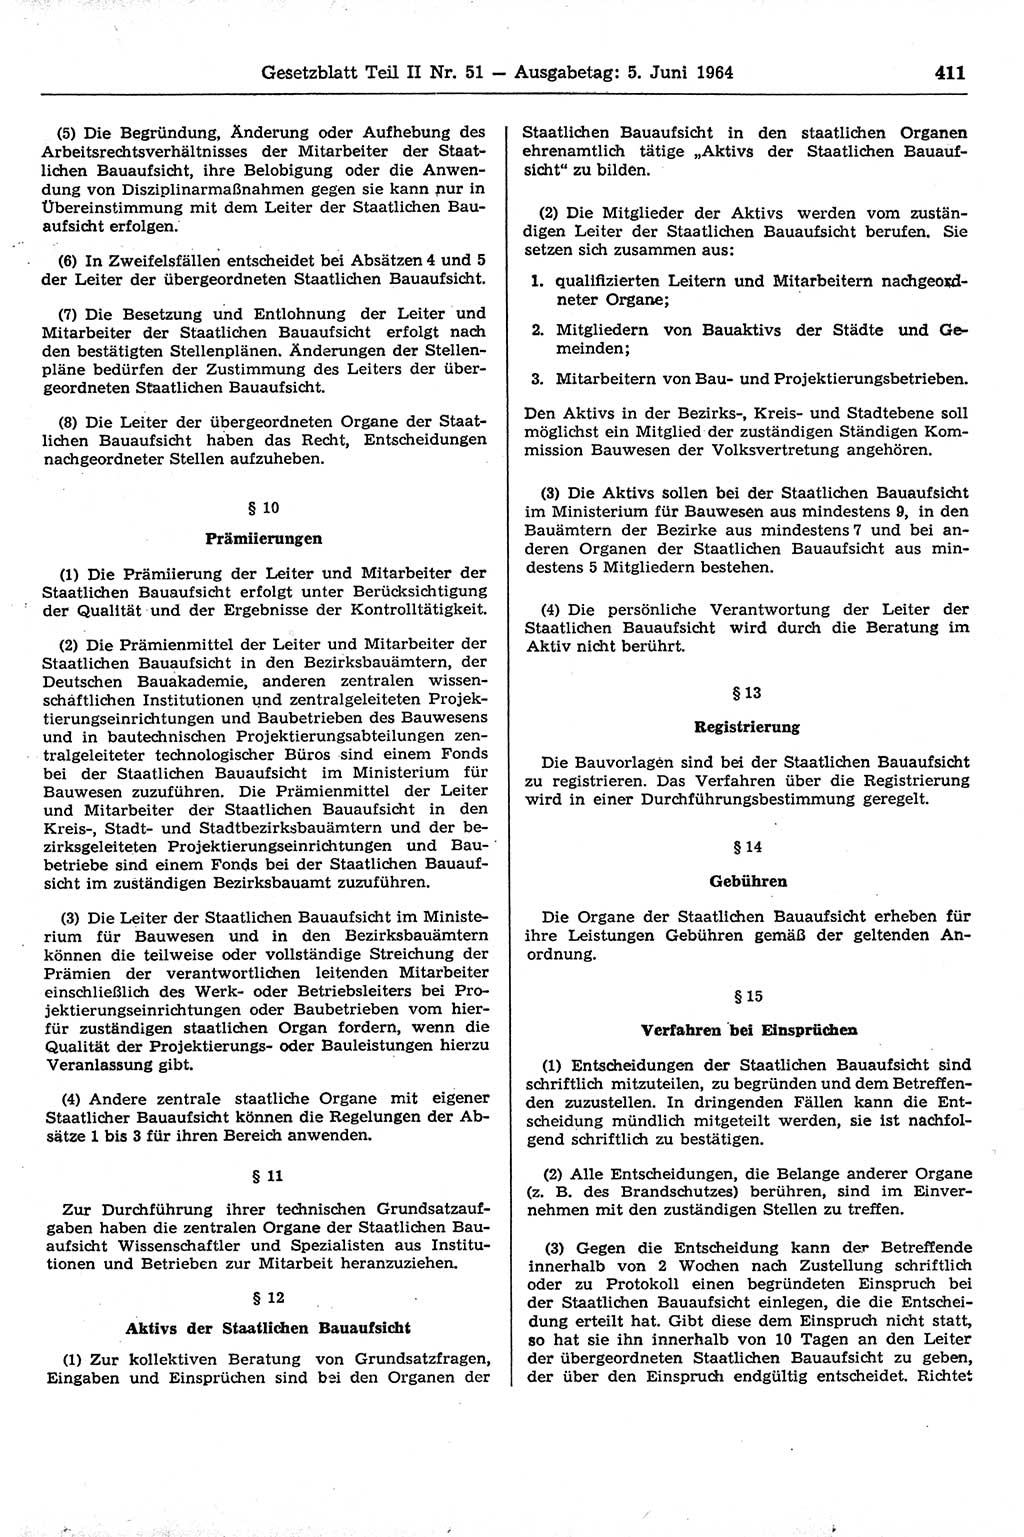 Gesetzblatt (GBl.) der Deutschen Demokratischen Republik (DDR) Teil ⅠⅠ 1964, Seite 411 (GBl. DDR ⅠⅠ 1964, S. 411)